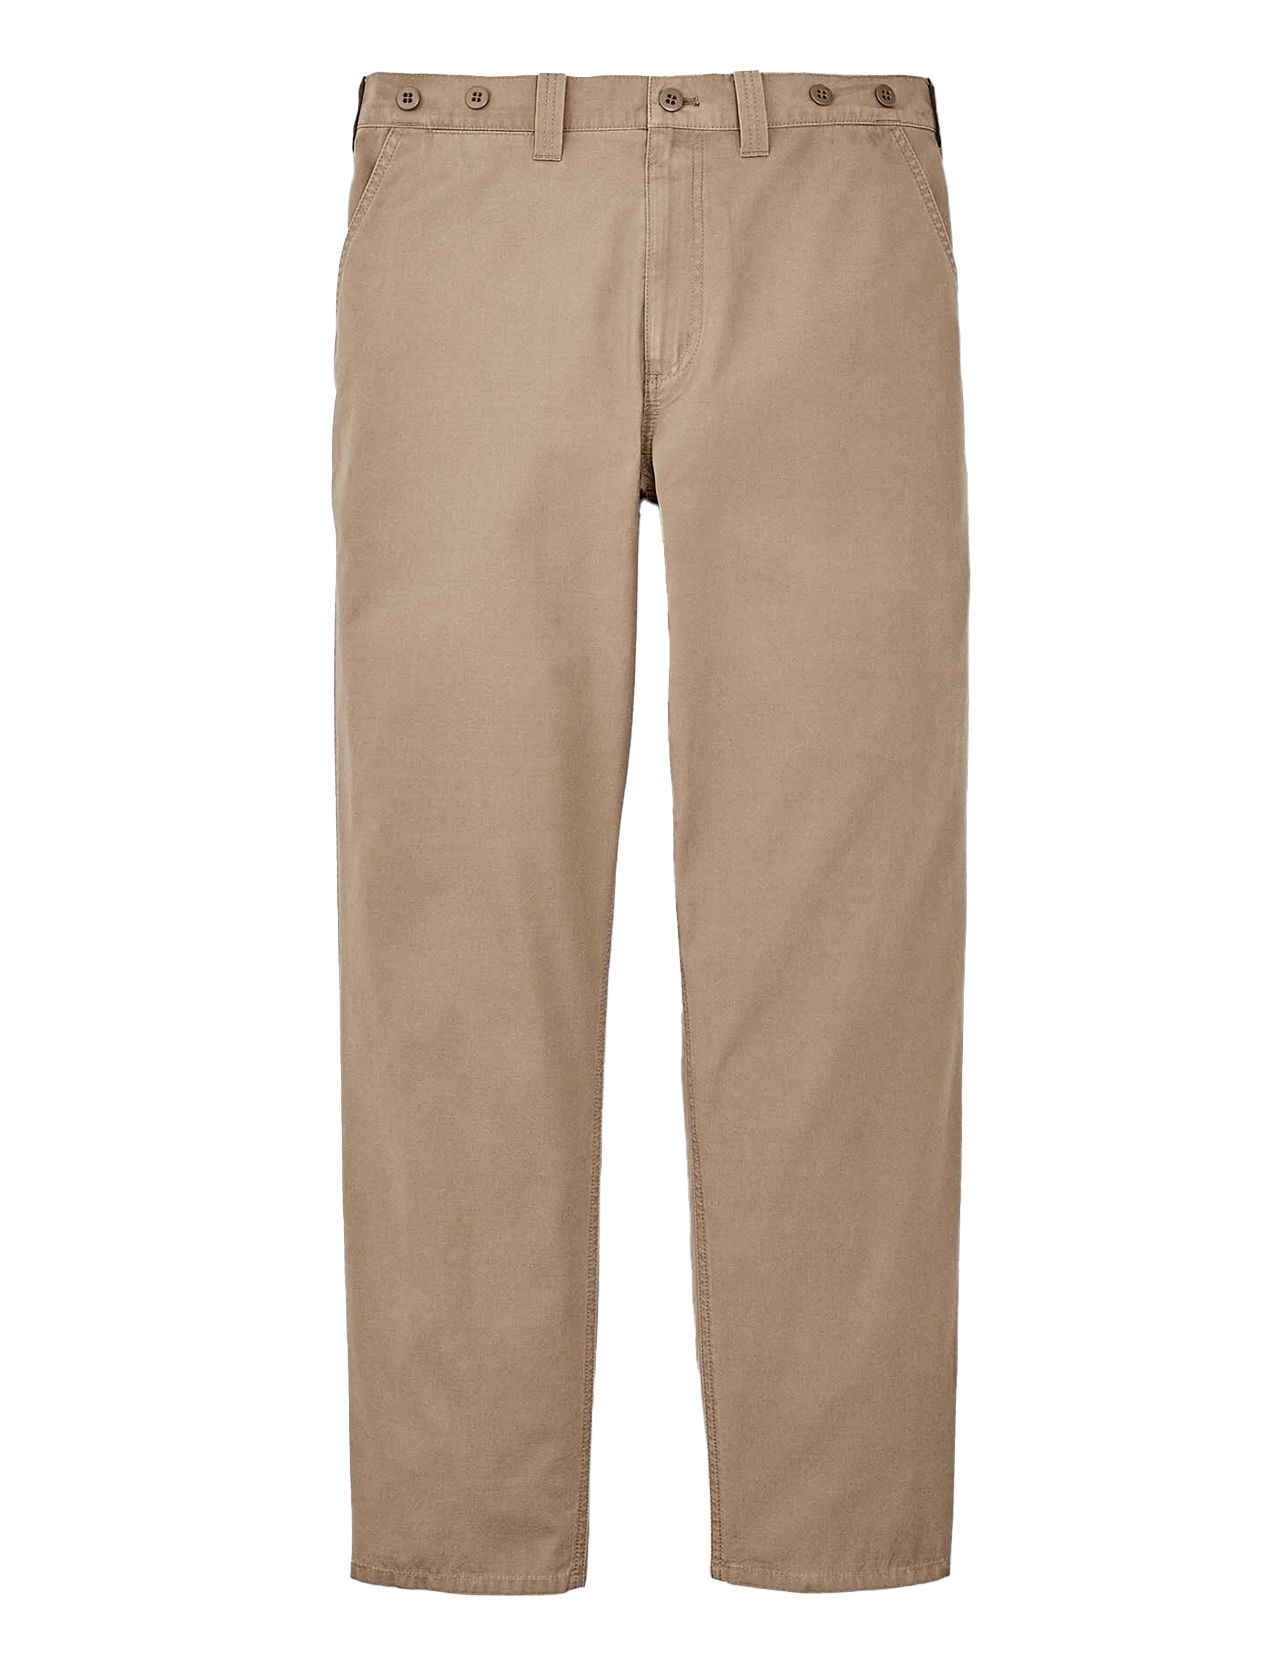 Filson - Safari Cloth Pants - Safari Khaki